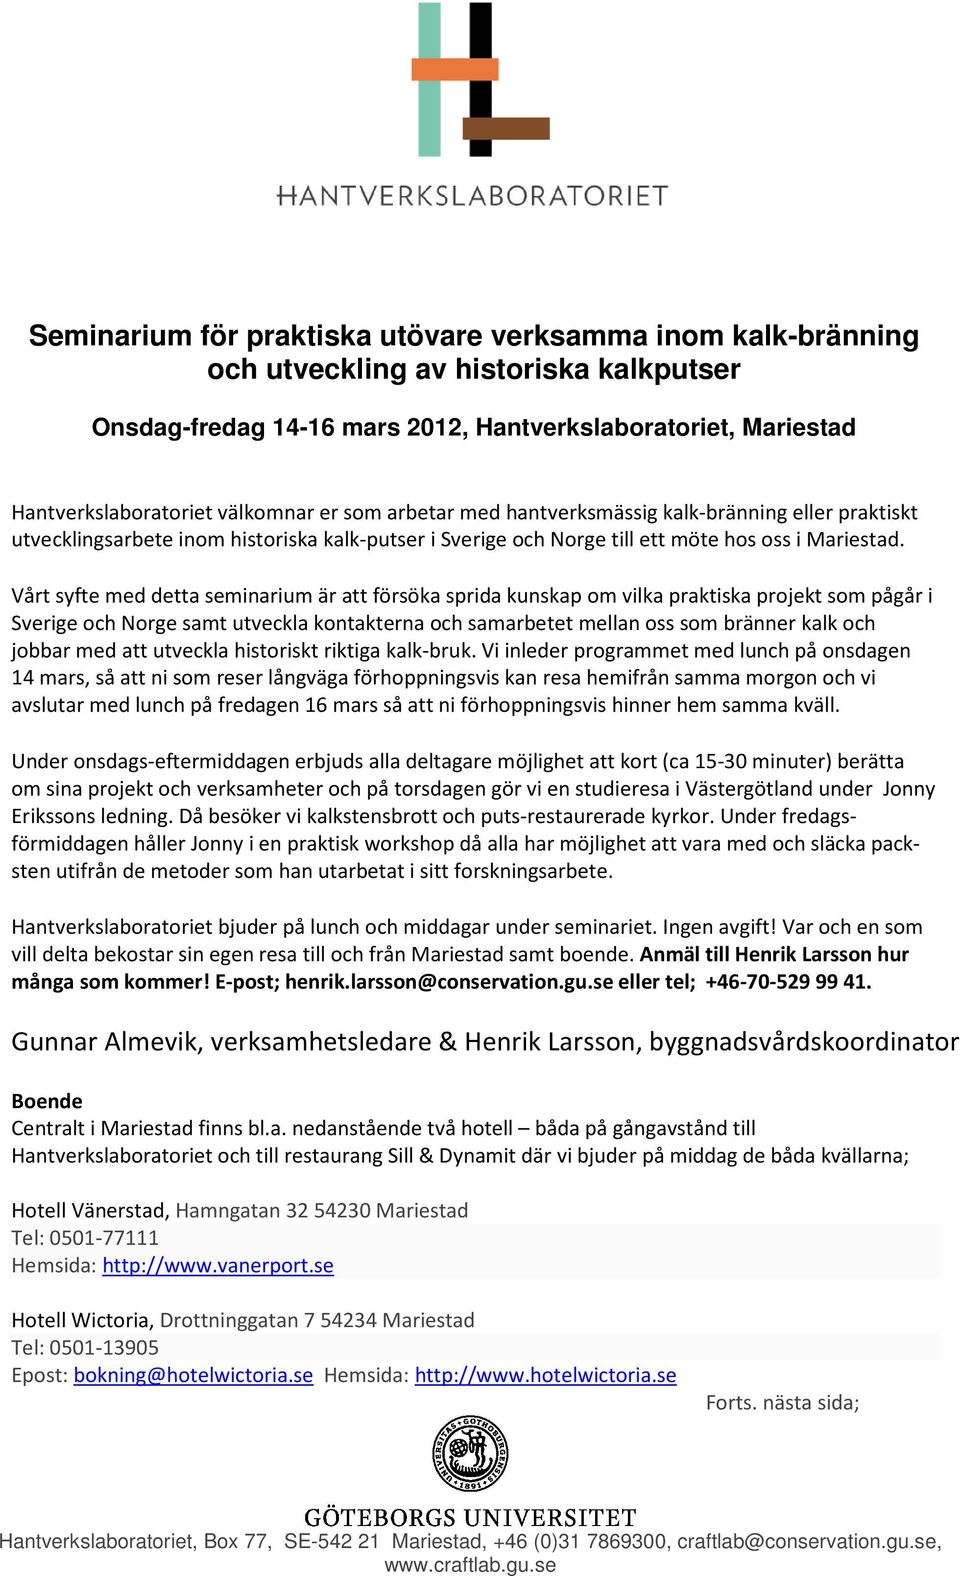 Vårt syfte med detta seminarium är att försöka sprida kunskap om vilka praktiska projekt som pågår i Sverige och Norge samt utveckla kontakterna och samarbetet mellan oss som bränner kalk och jobbar